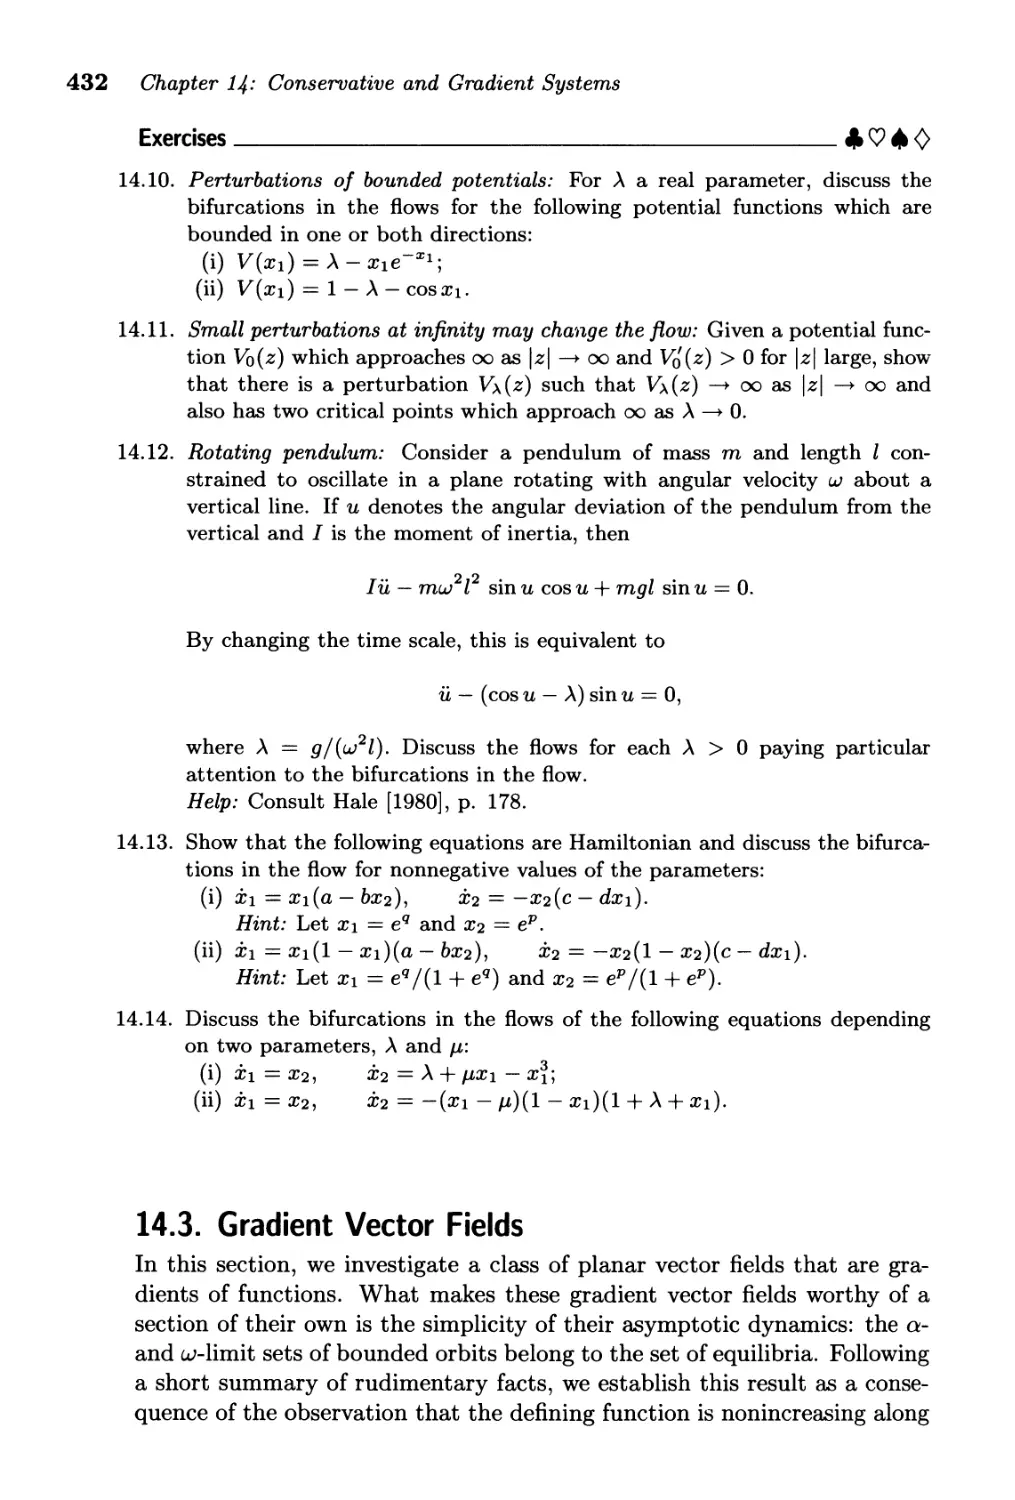 14.3. Gradient Vector Fields